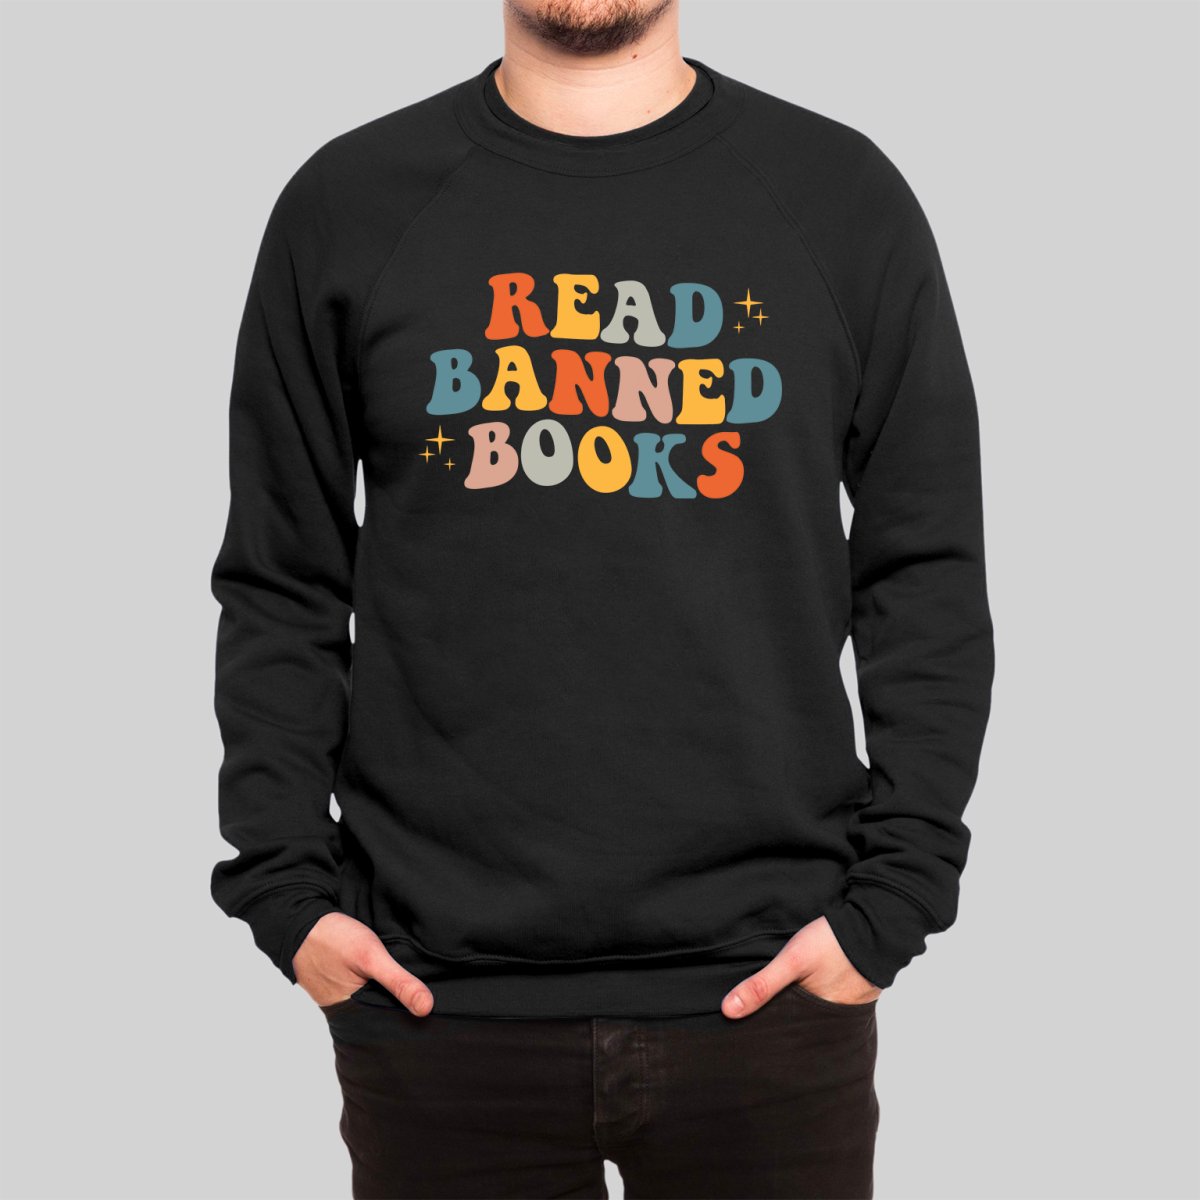 READ BANNED BOOKS Sweatshirt - Geeksoutfit